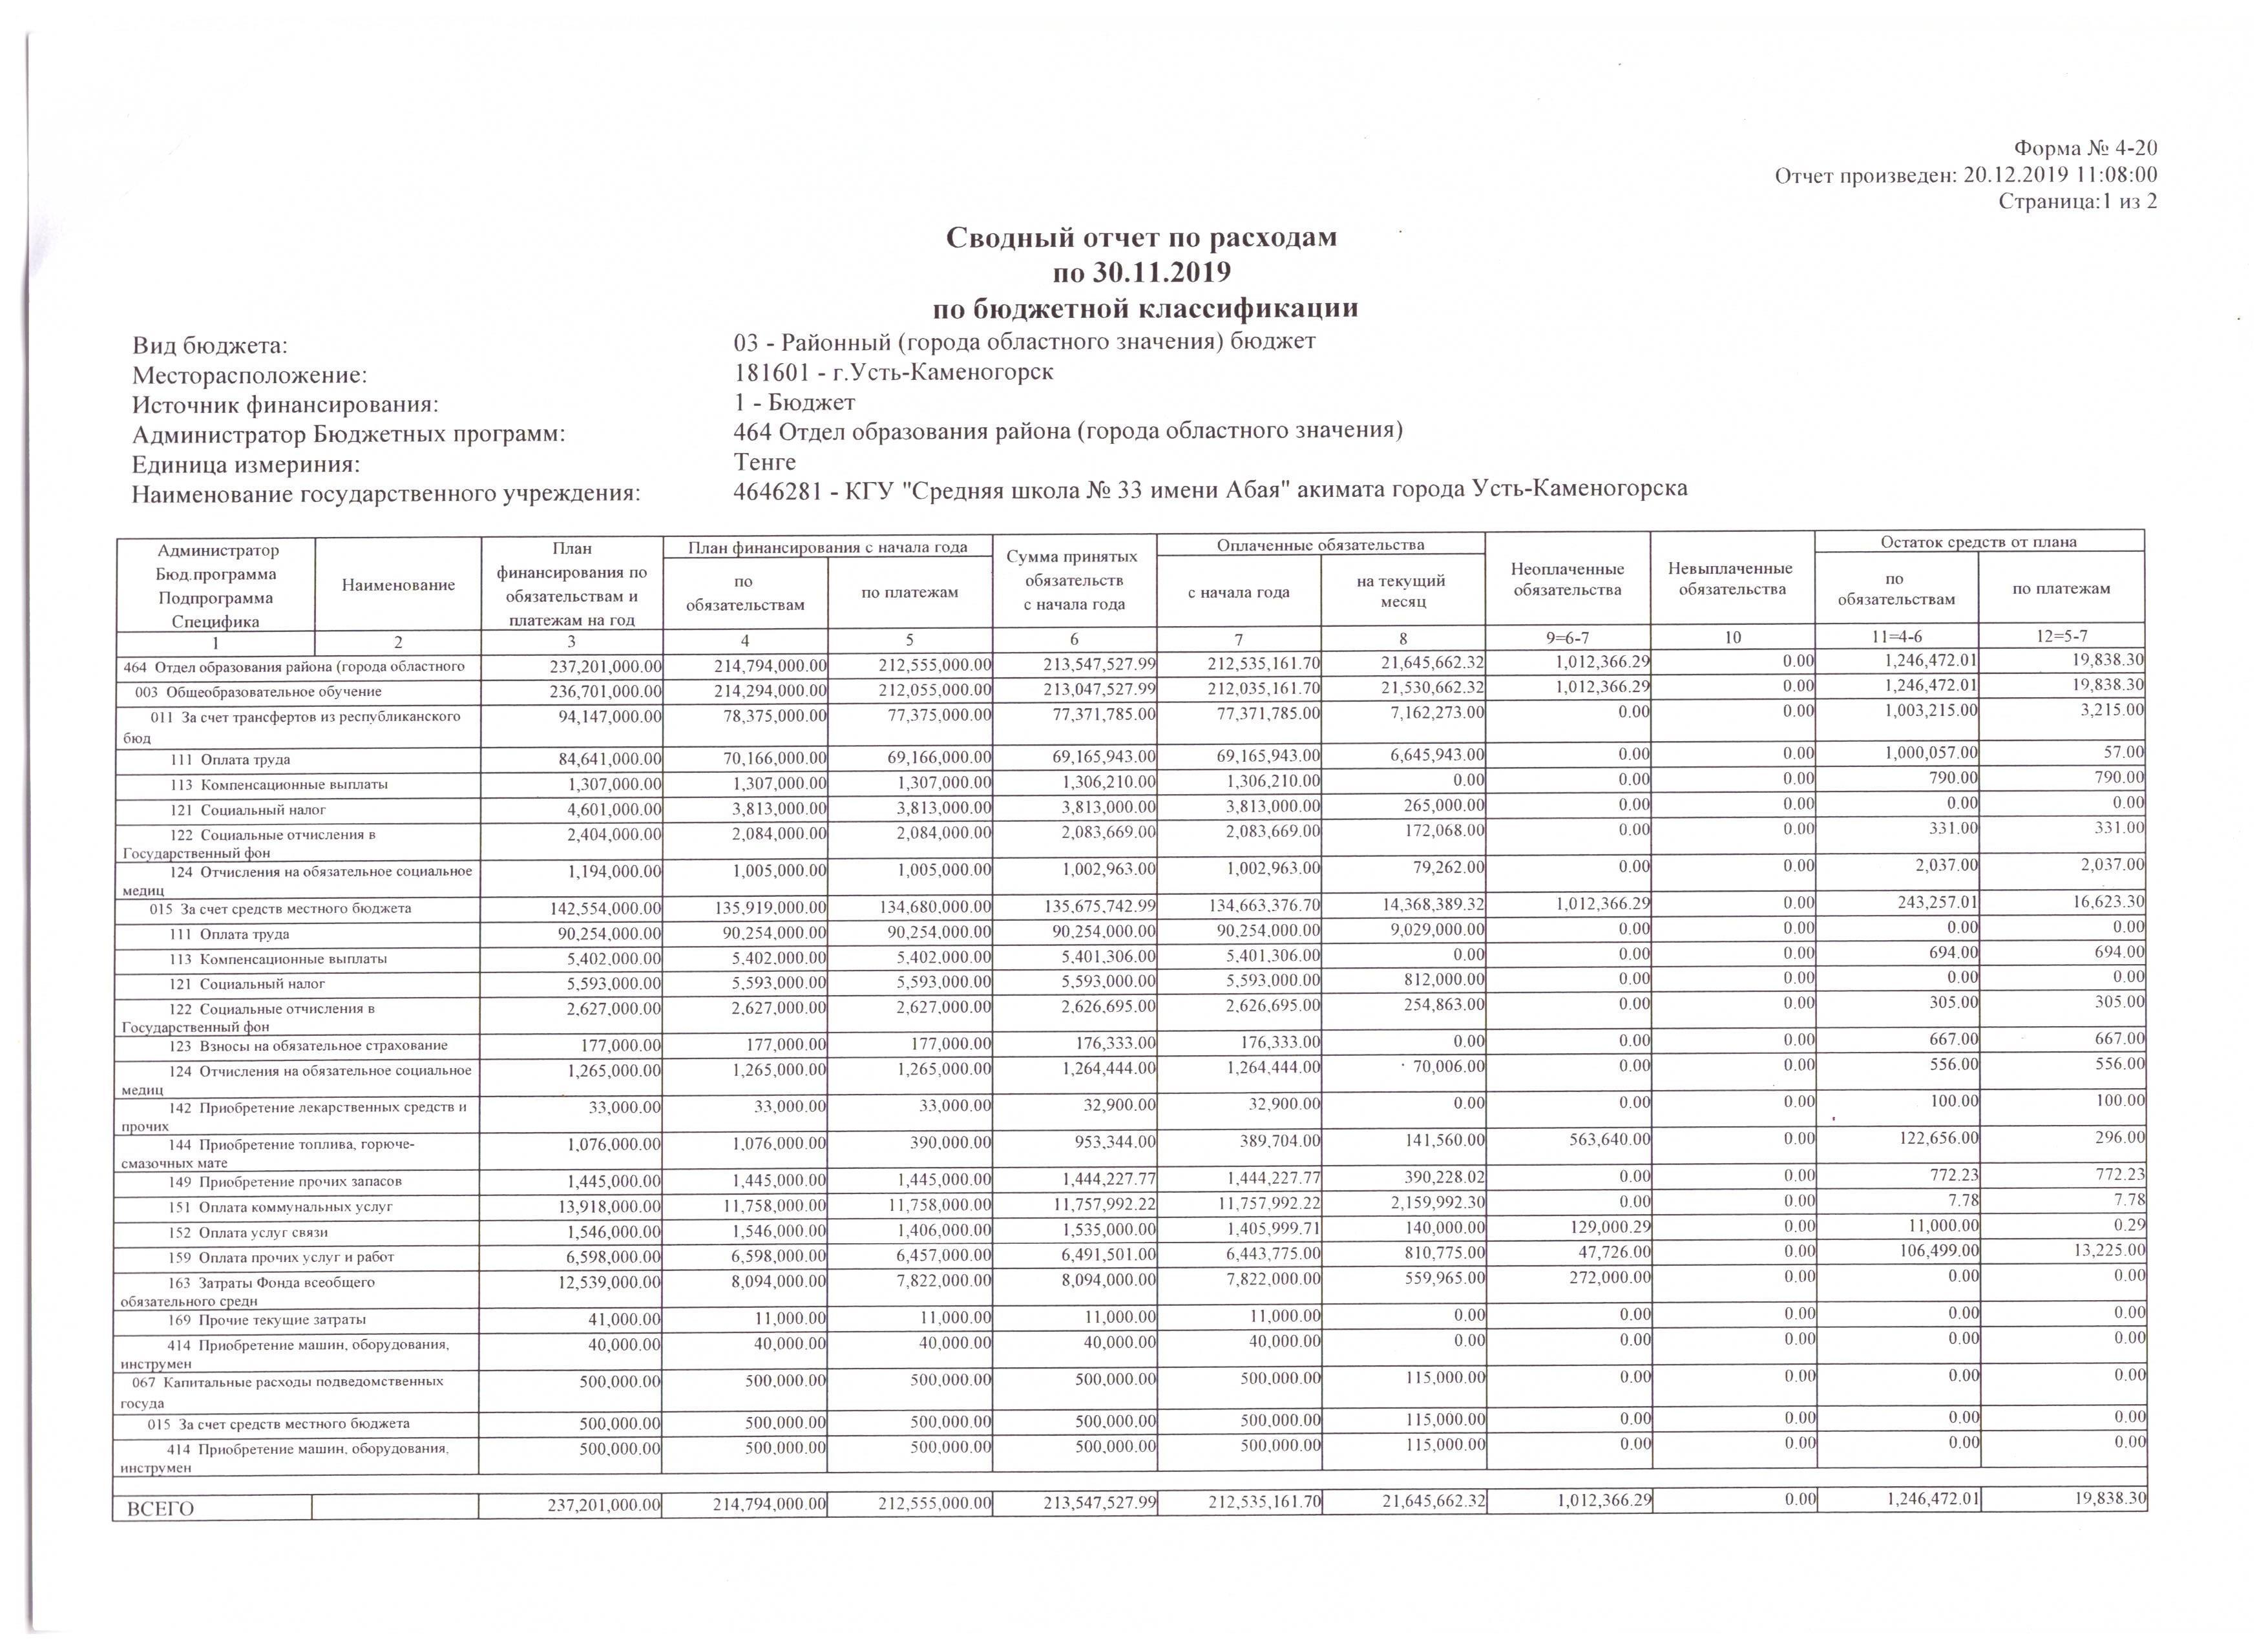 Сводный отчет по расходам по 30.11.2019 по бюджетной  классификации